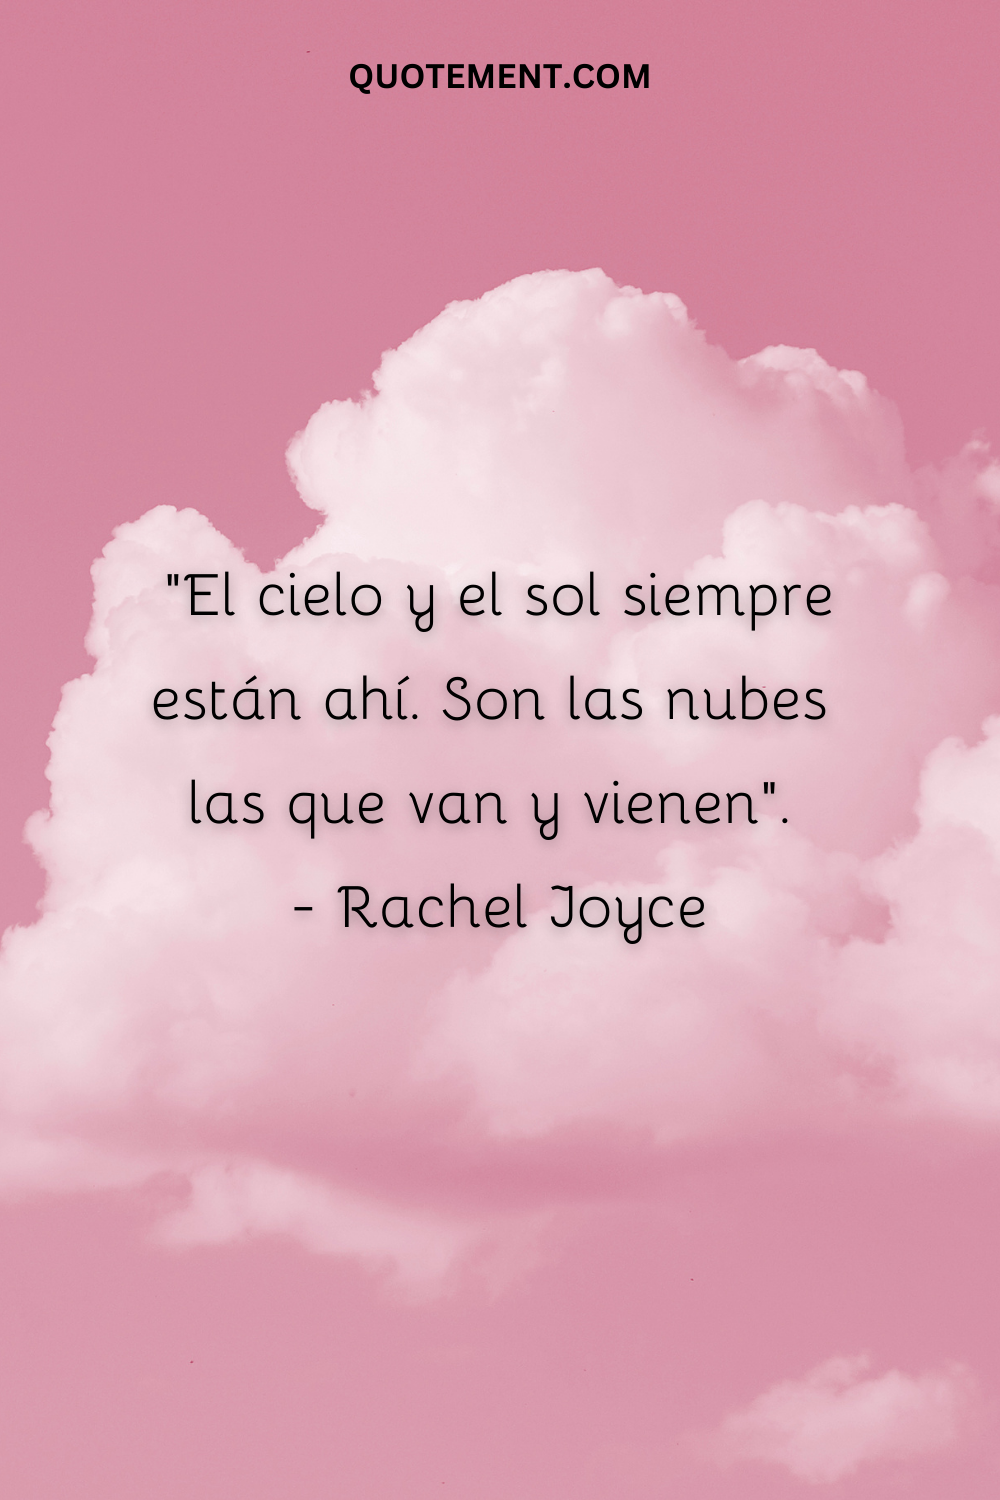 "El cielo y el sol siempre están ahí. Son las nubes las que van y vienen". - Rachel Joyce